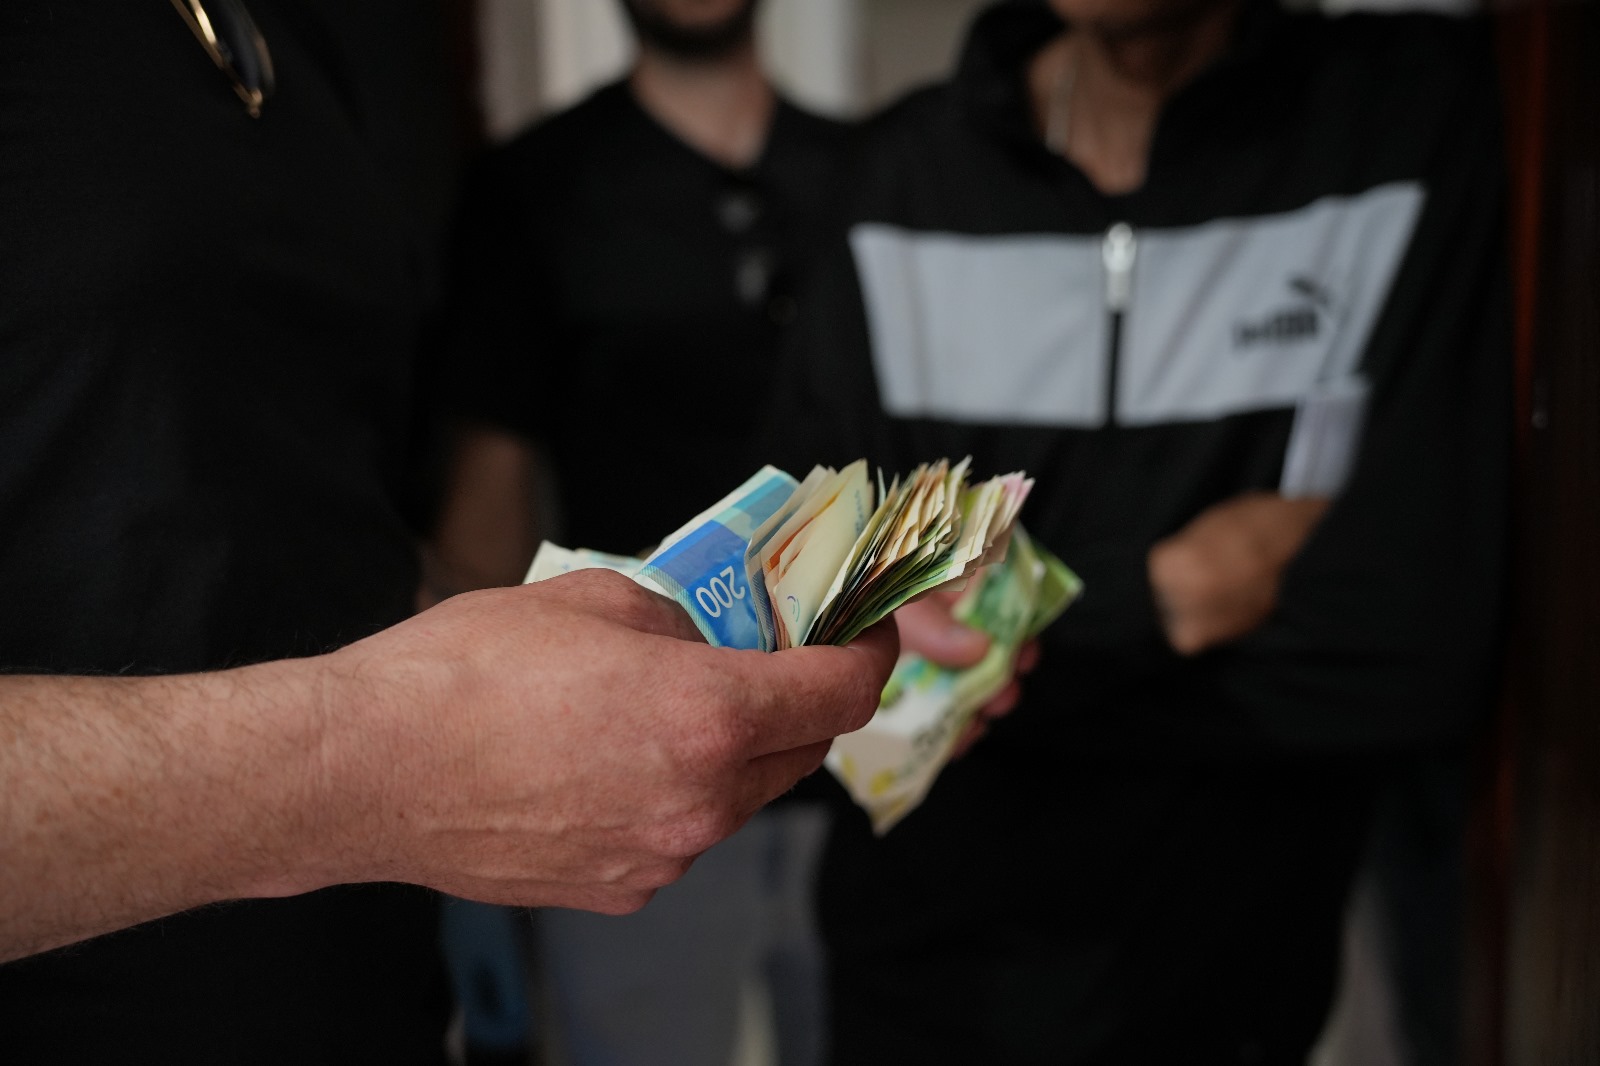 סמים, כסף ומעצר: חשוד בסחר נתפס בפשיטה באשקלון